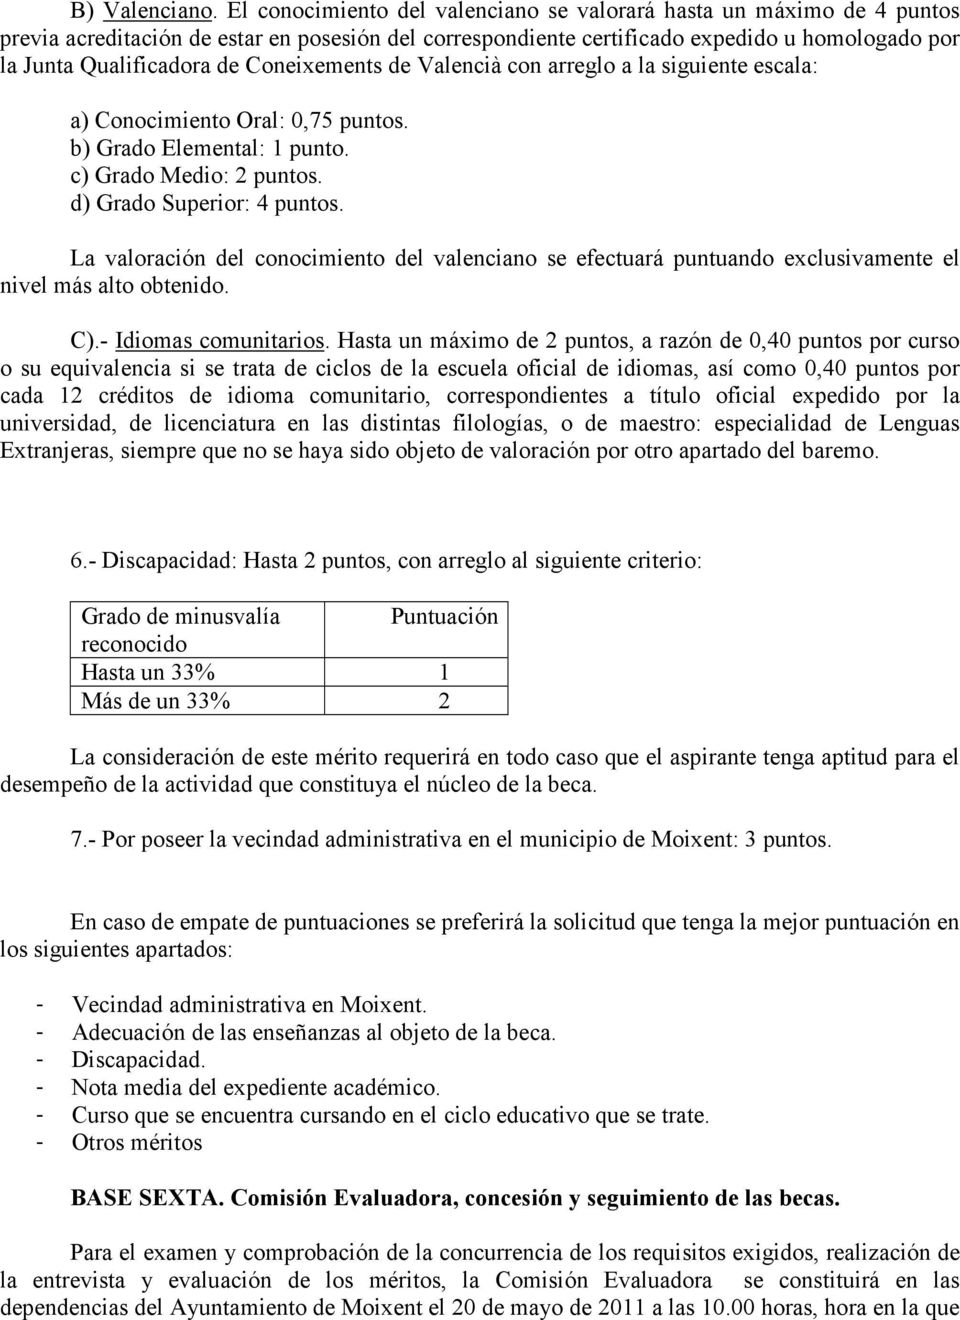 Coneixements de Valencià con arreglo a la siguiente escala: a) Conocimiento Oral: 0,75 puntos. b) Grado Elemental: 1 punto. c) Grado Medio: 2 puntos. d) Grado Superior: 4 puntos.